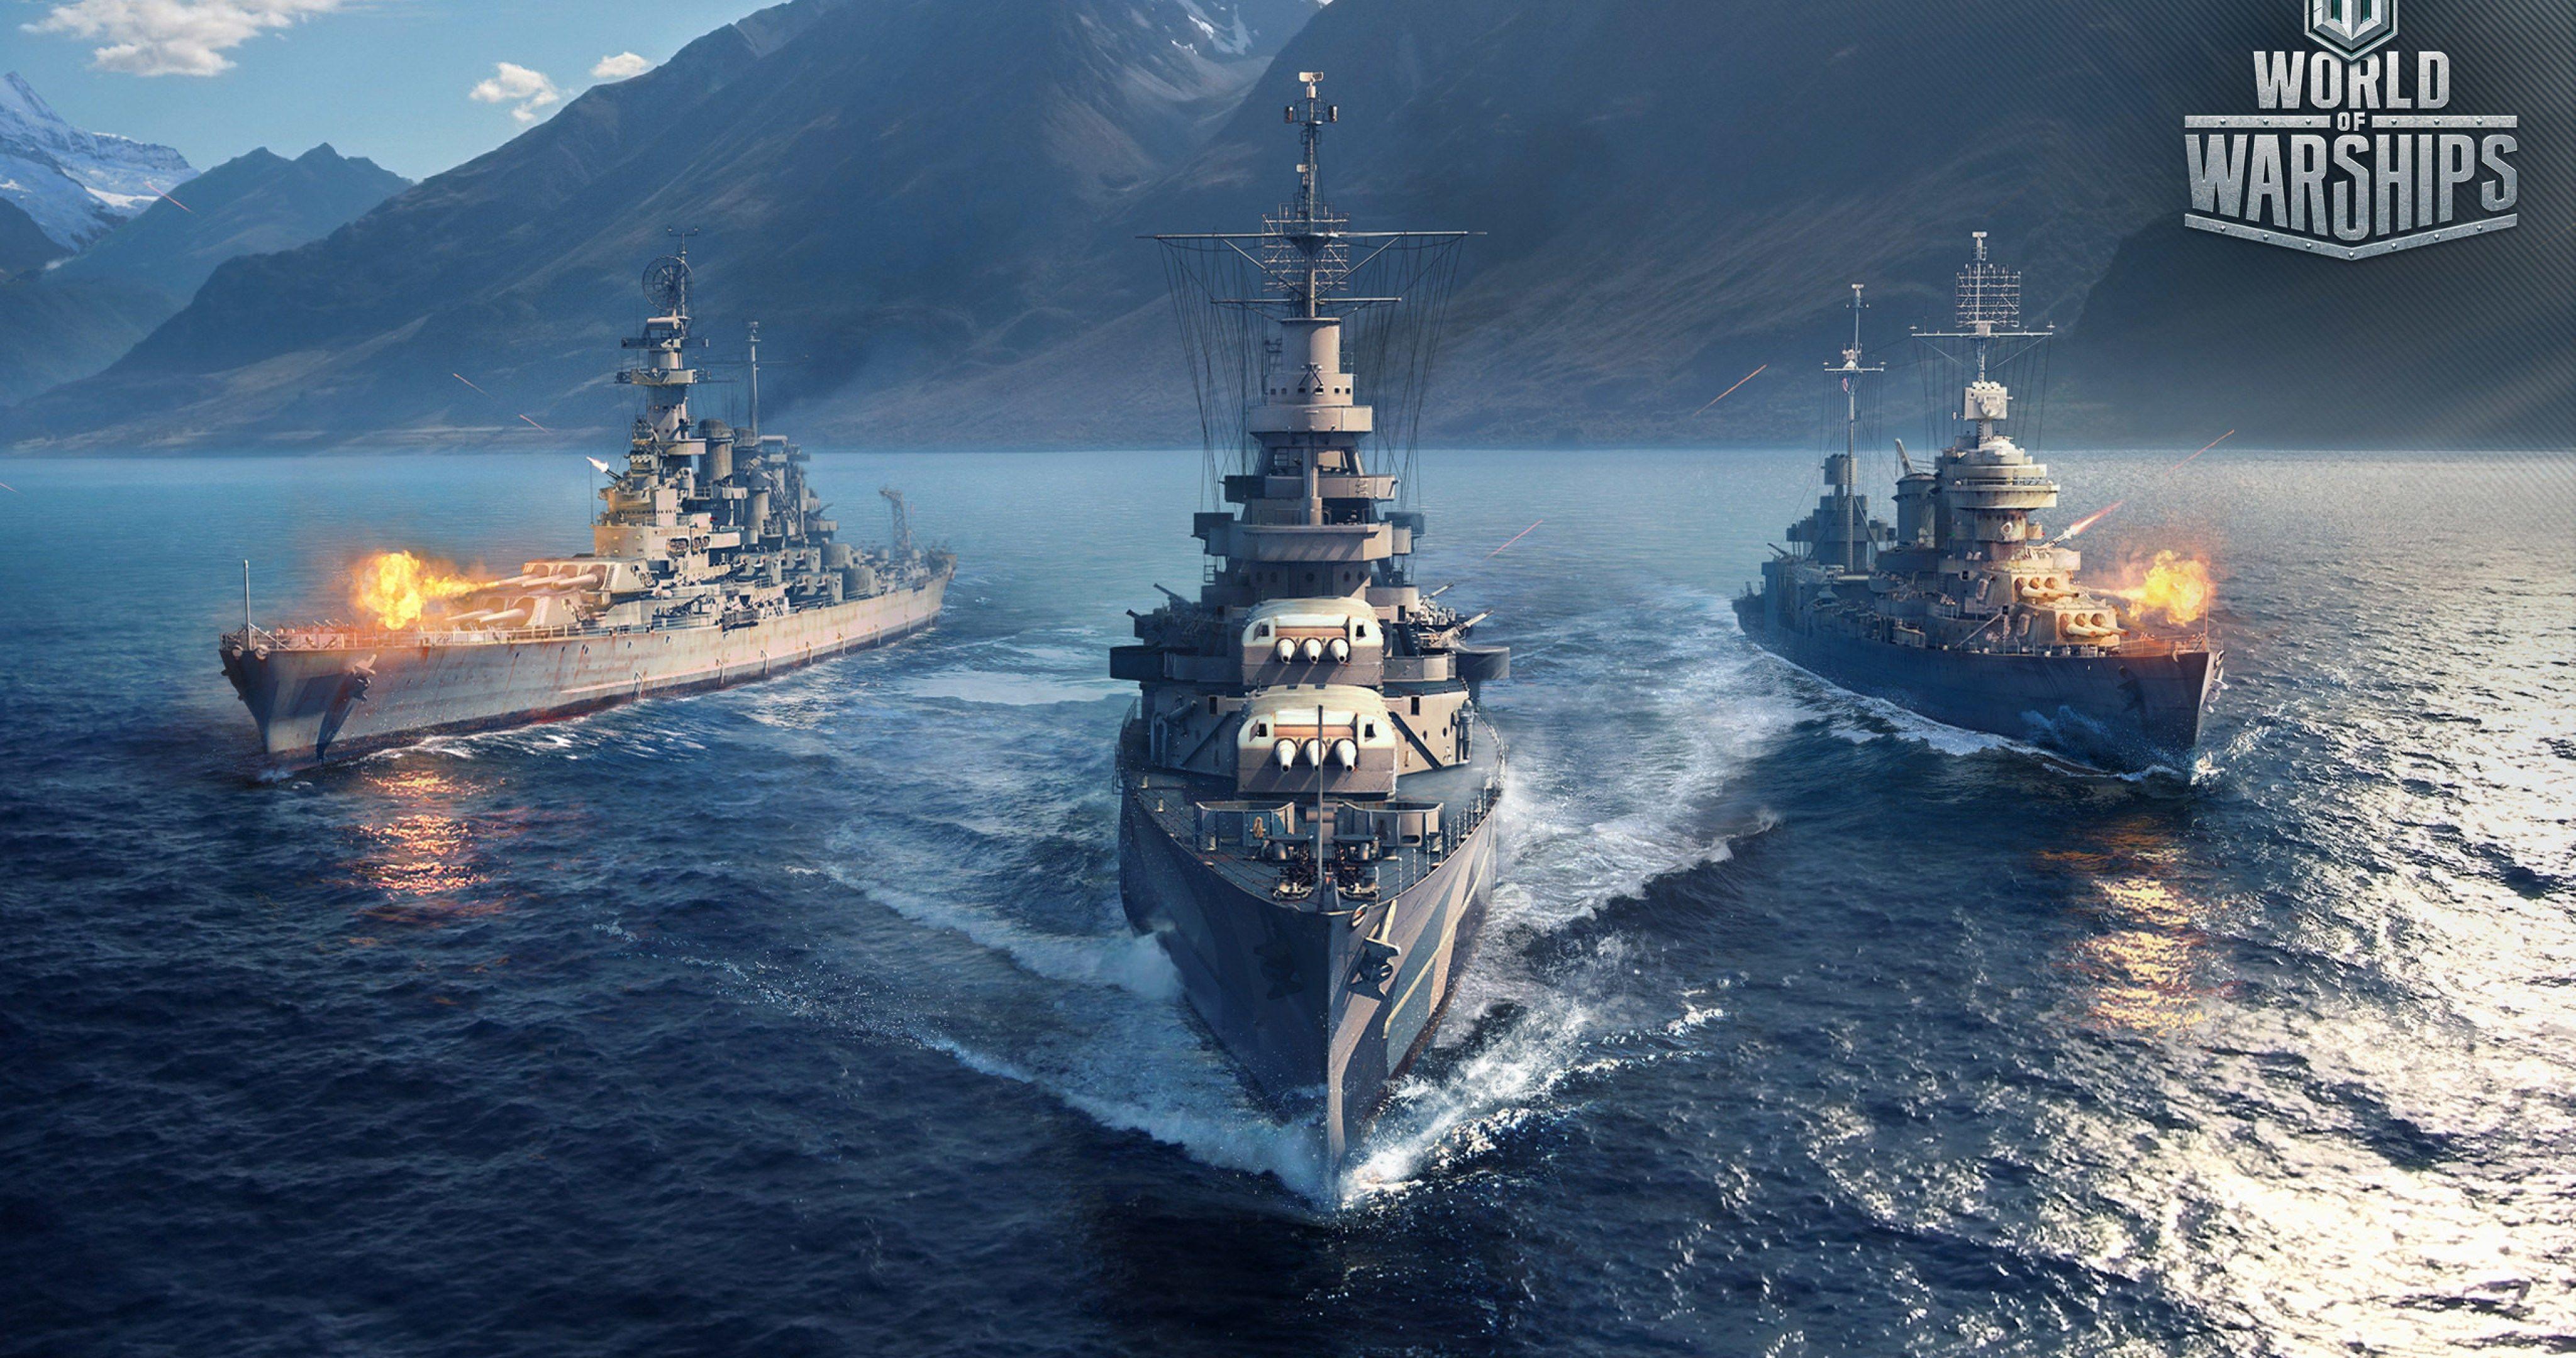 Battleship Wallpapers - Top Free Battleship Backgrounds - WallpaperAccess